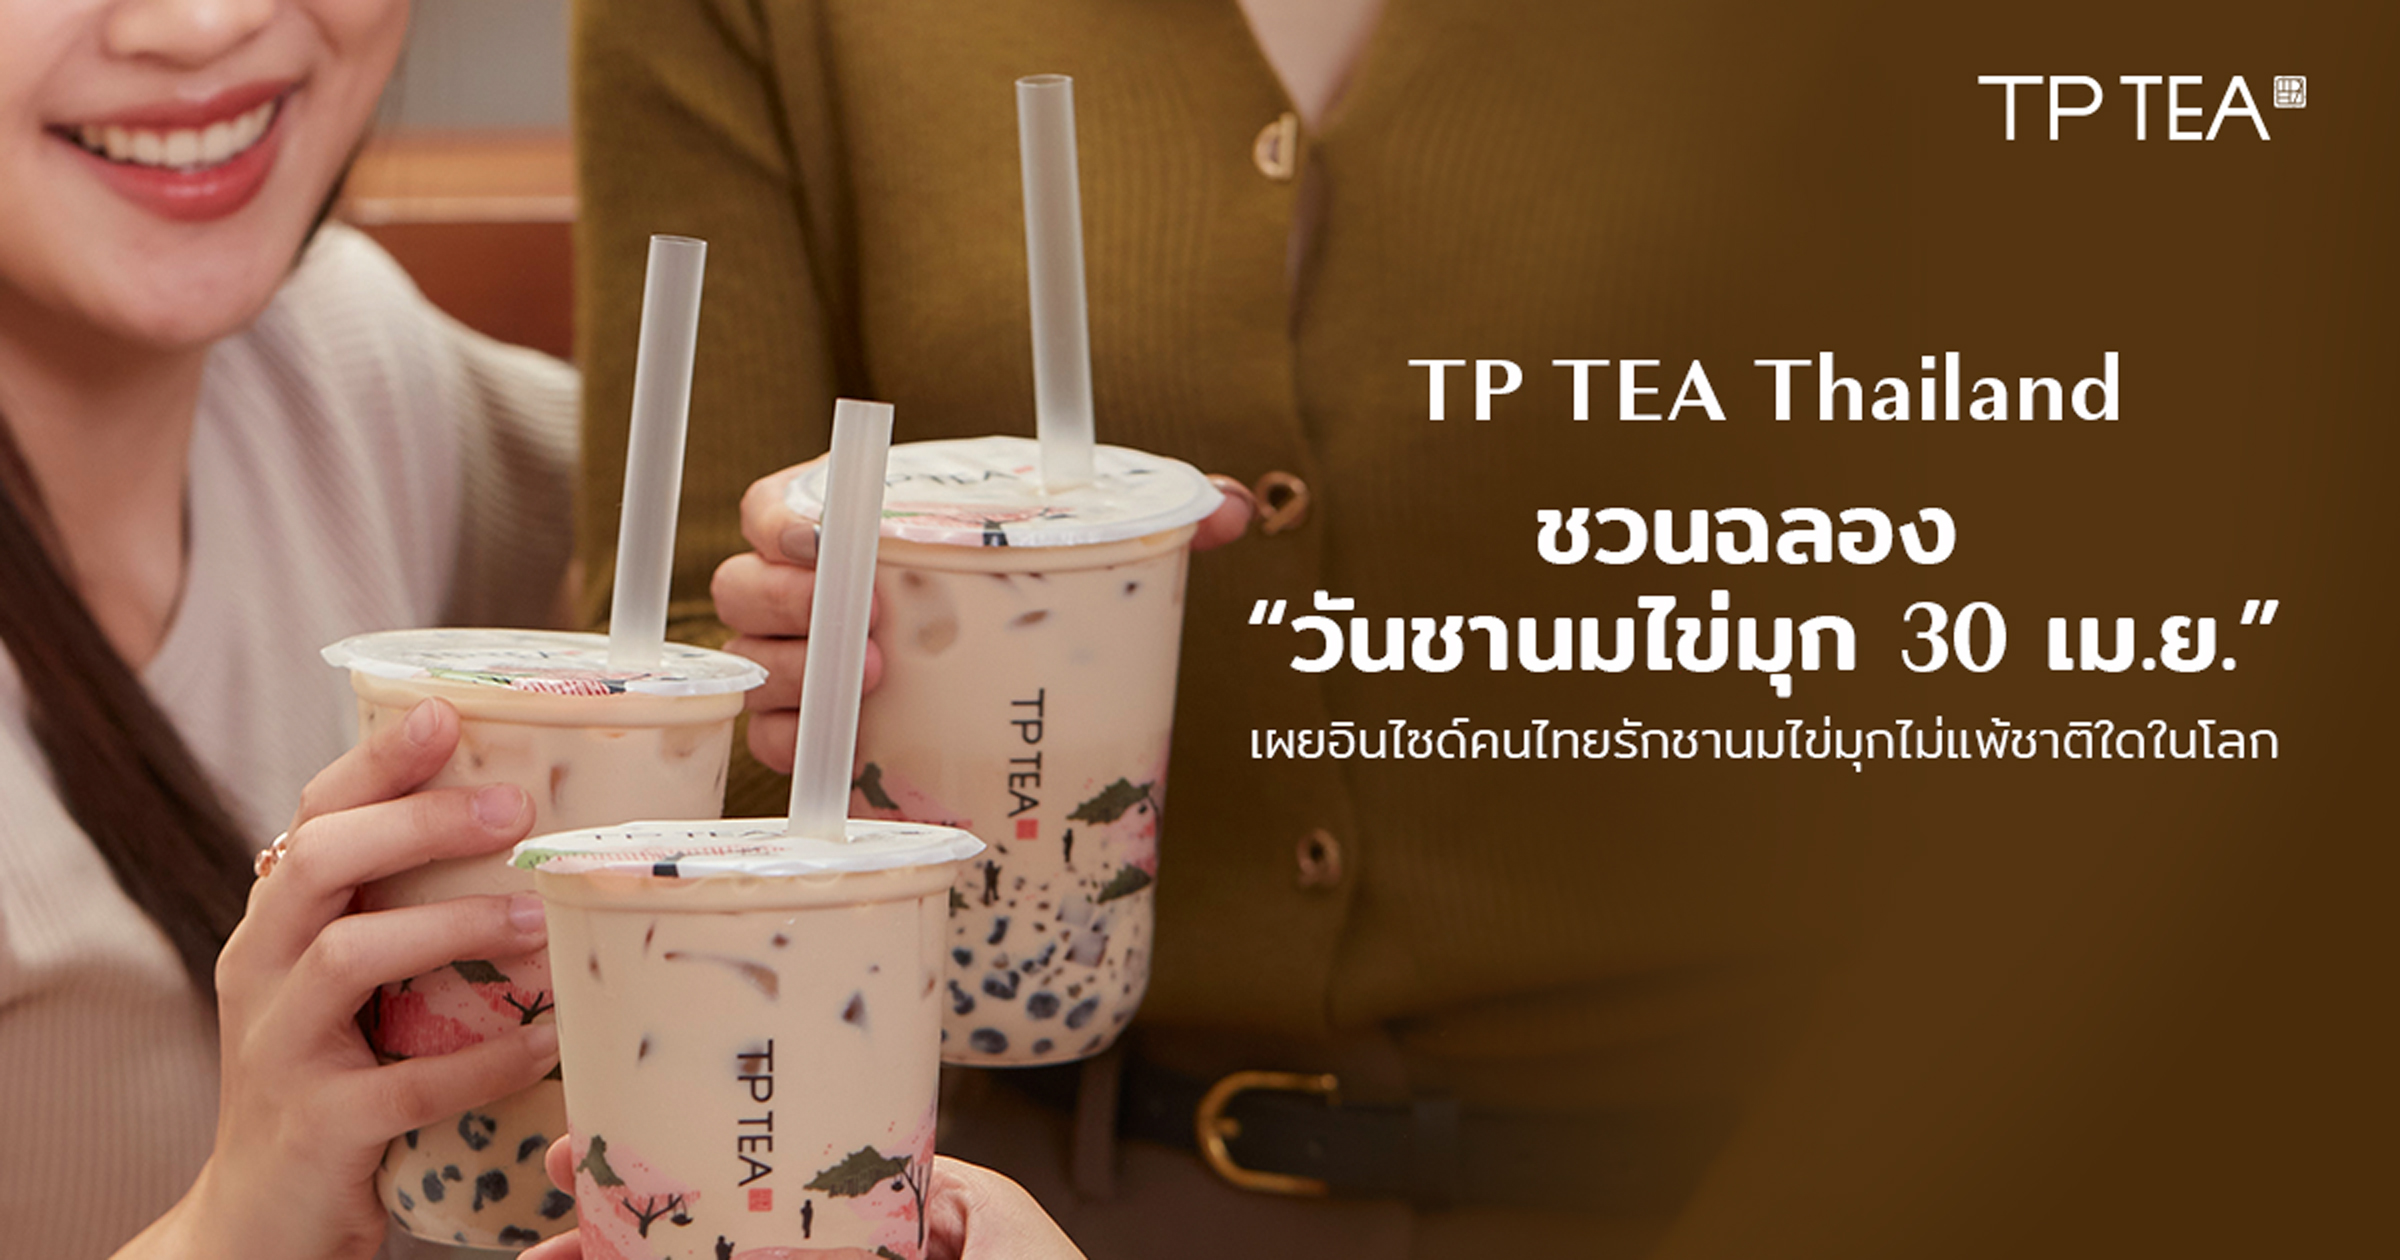 TP TEA Thailand ชวนฉลอง “วันชานมไข่มุก 30 เม.ย.” เผยอินไซด์คนไทยรักชานมไข่มุกไม่แพ้ชาติใดในโลก สำนักพิมพ์แม่บ้าน